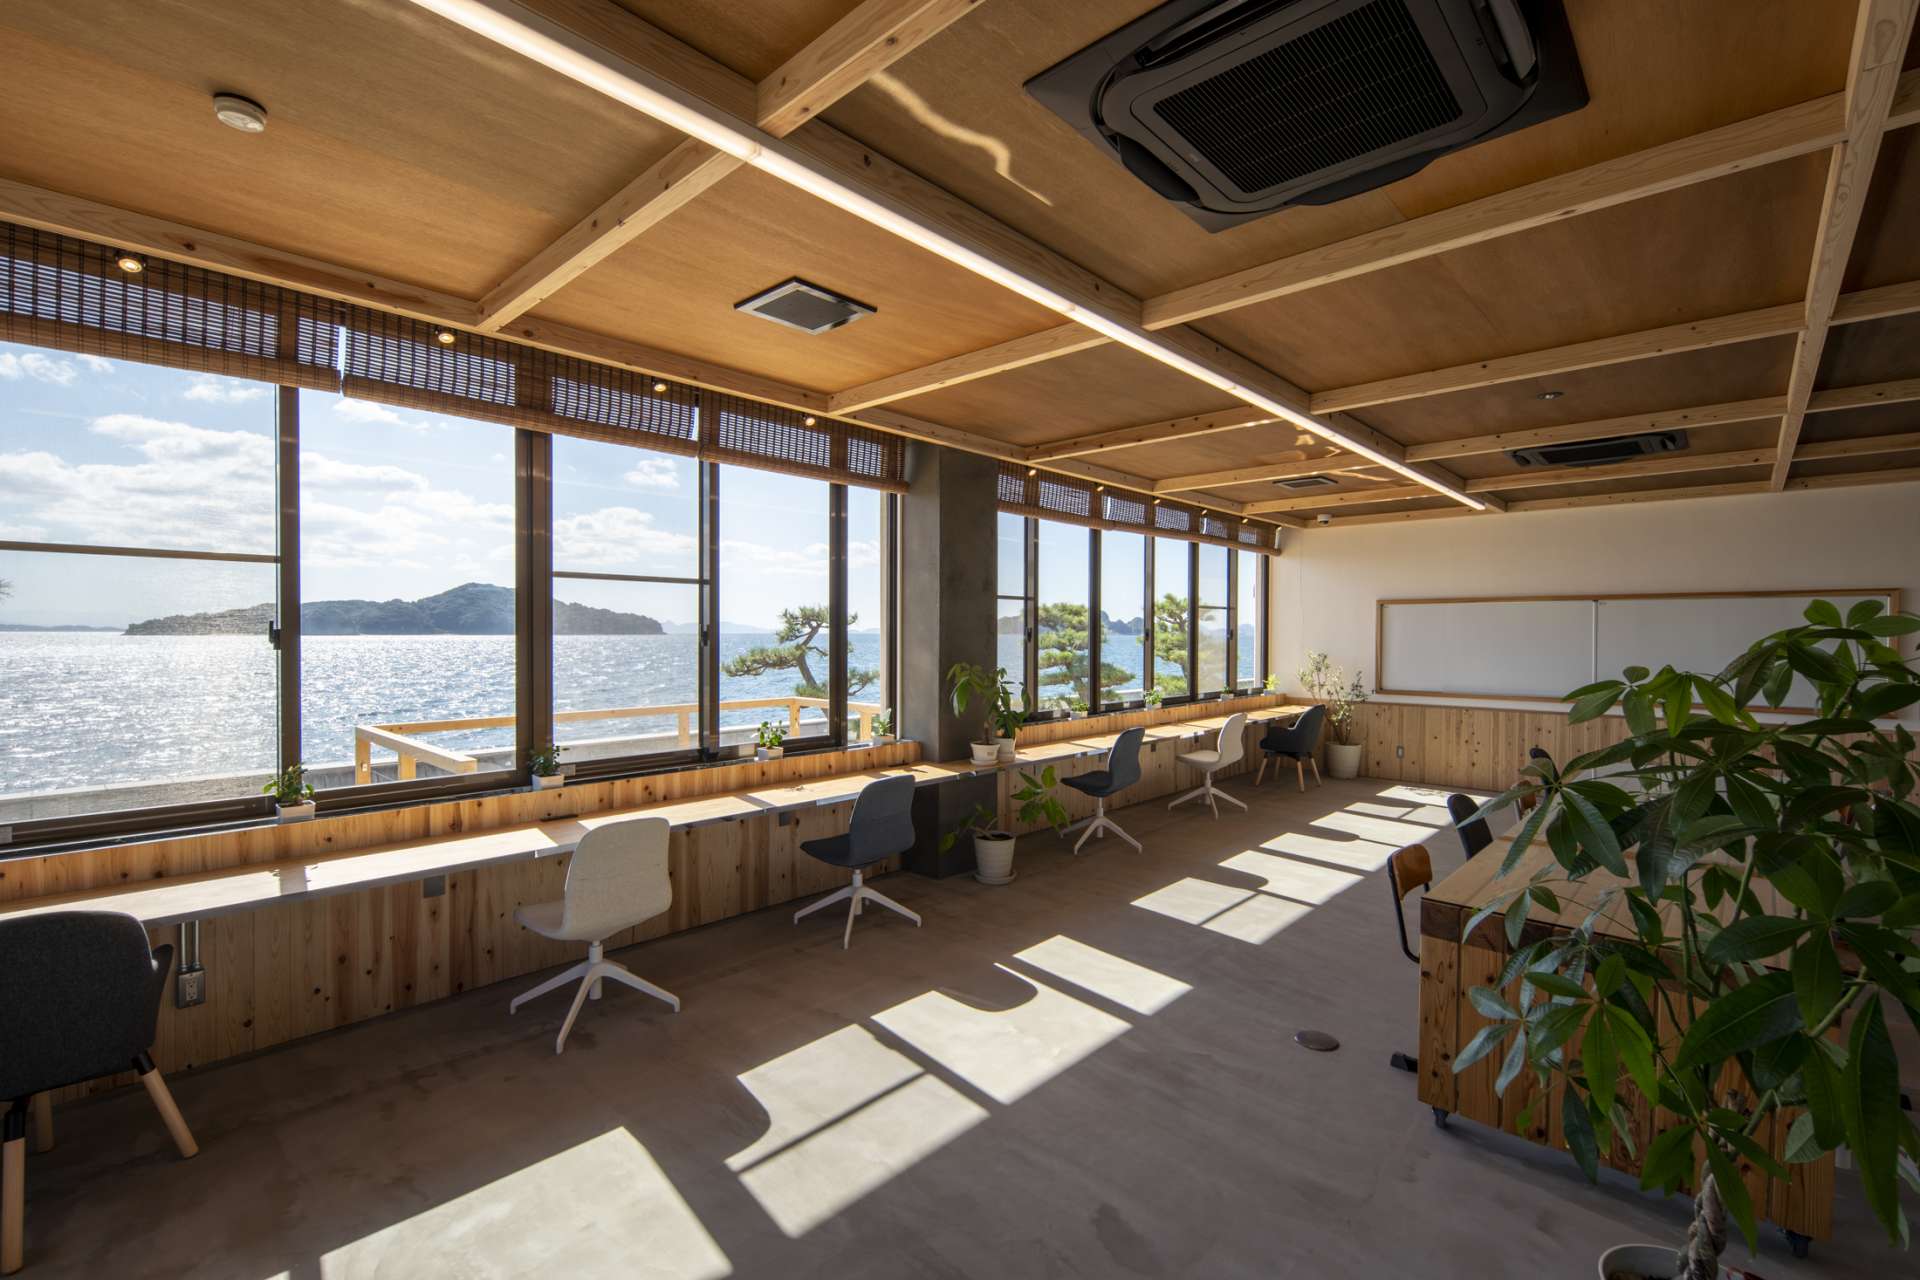 広島でおしゃれなオフィスデザインなど内装デザイン、空間デザインはasazu design office